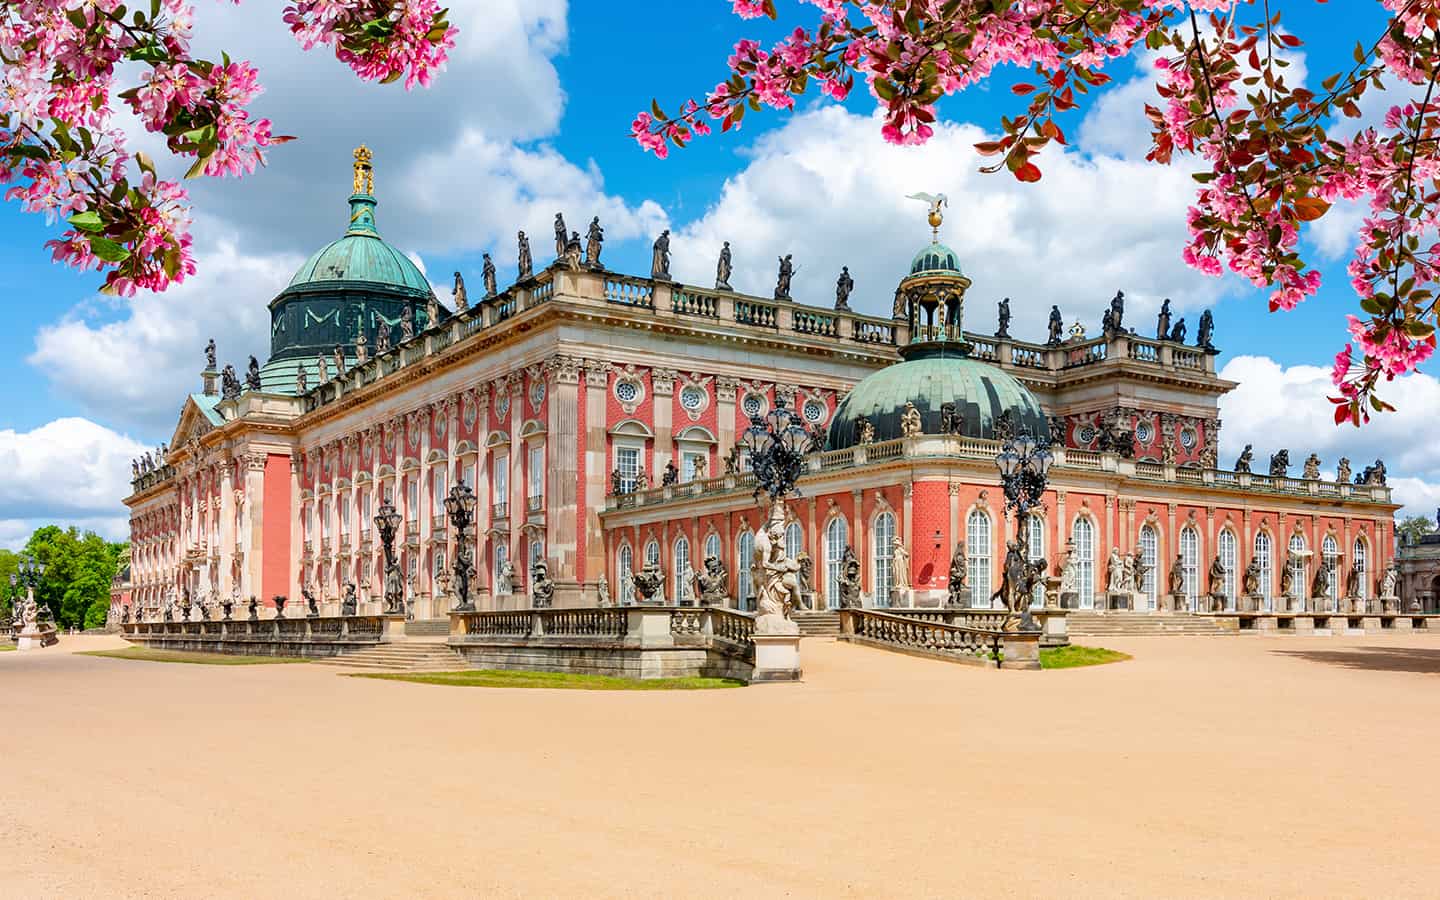 Neuer Palast im Park Sanssouci im Sommer, Potsdam, Deutschland